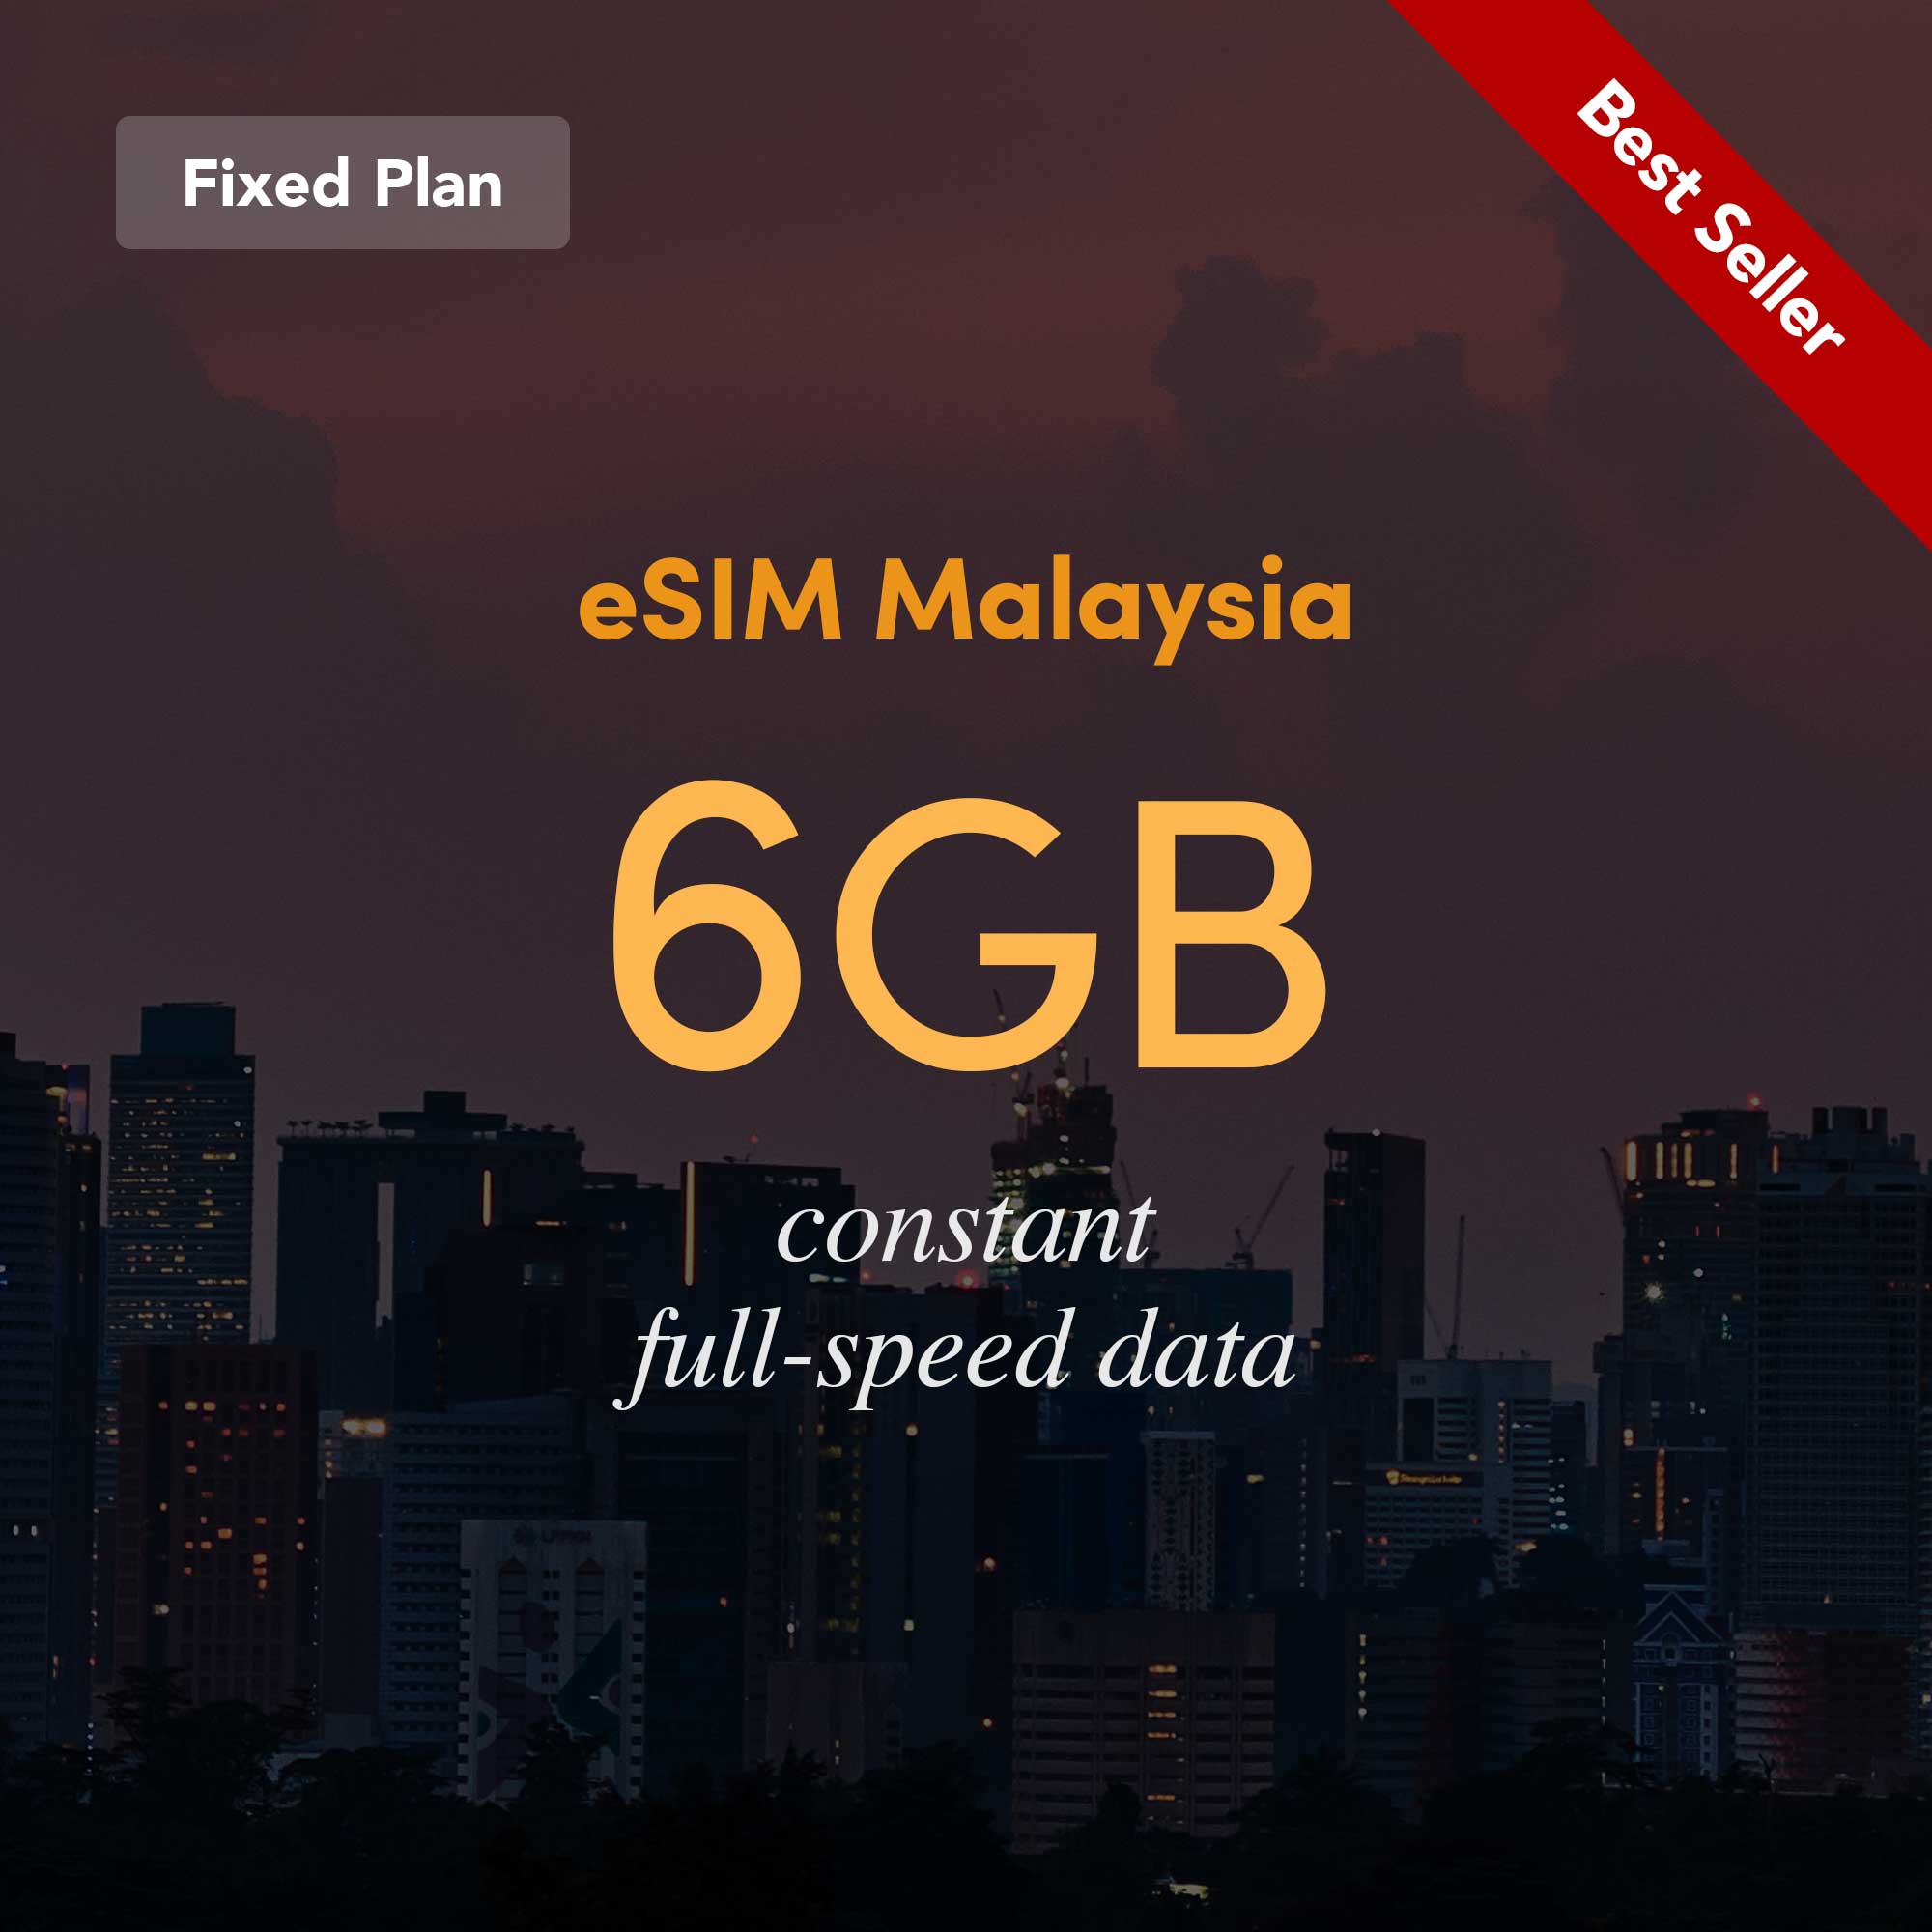 eSIM Malaysia Fixed Plan 6GB